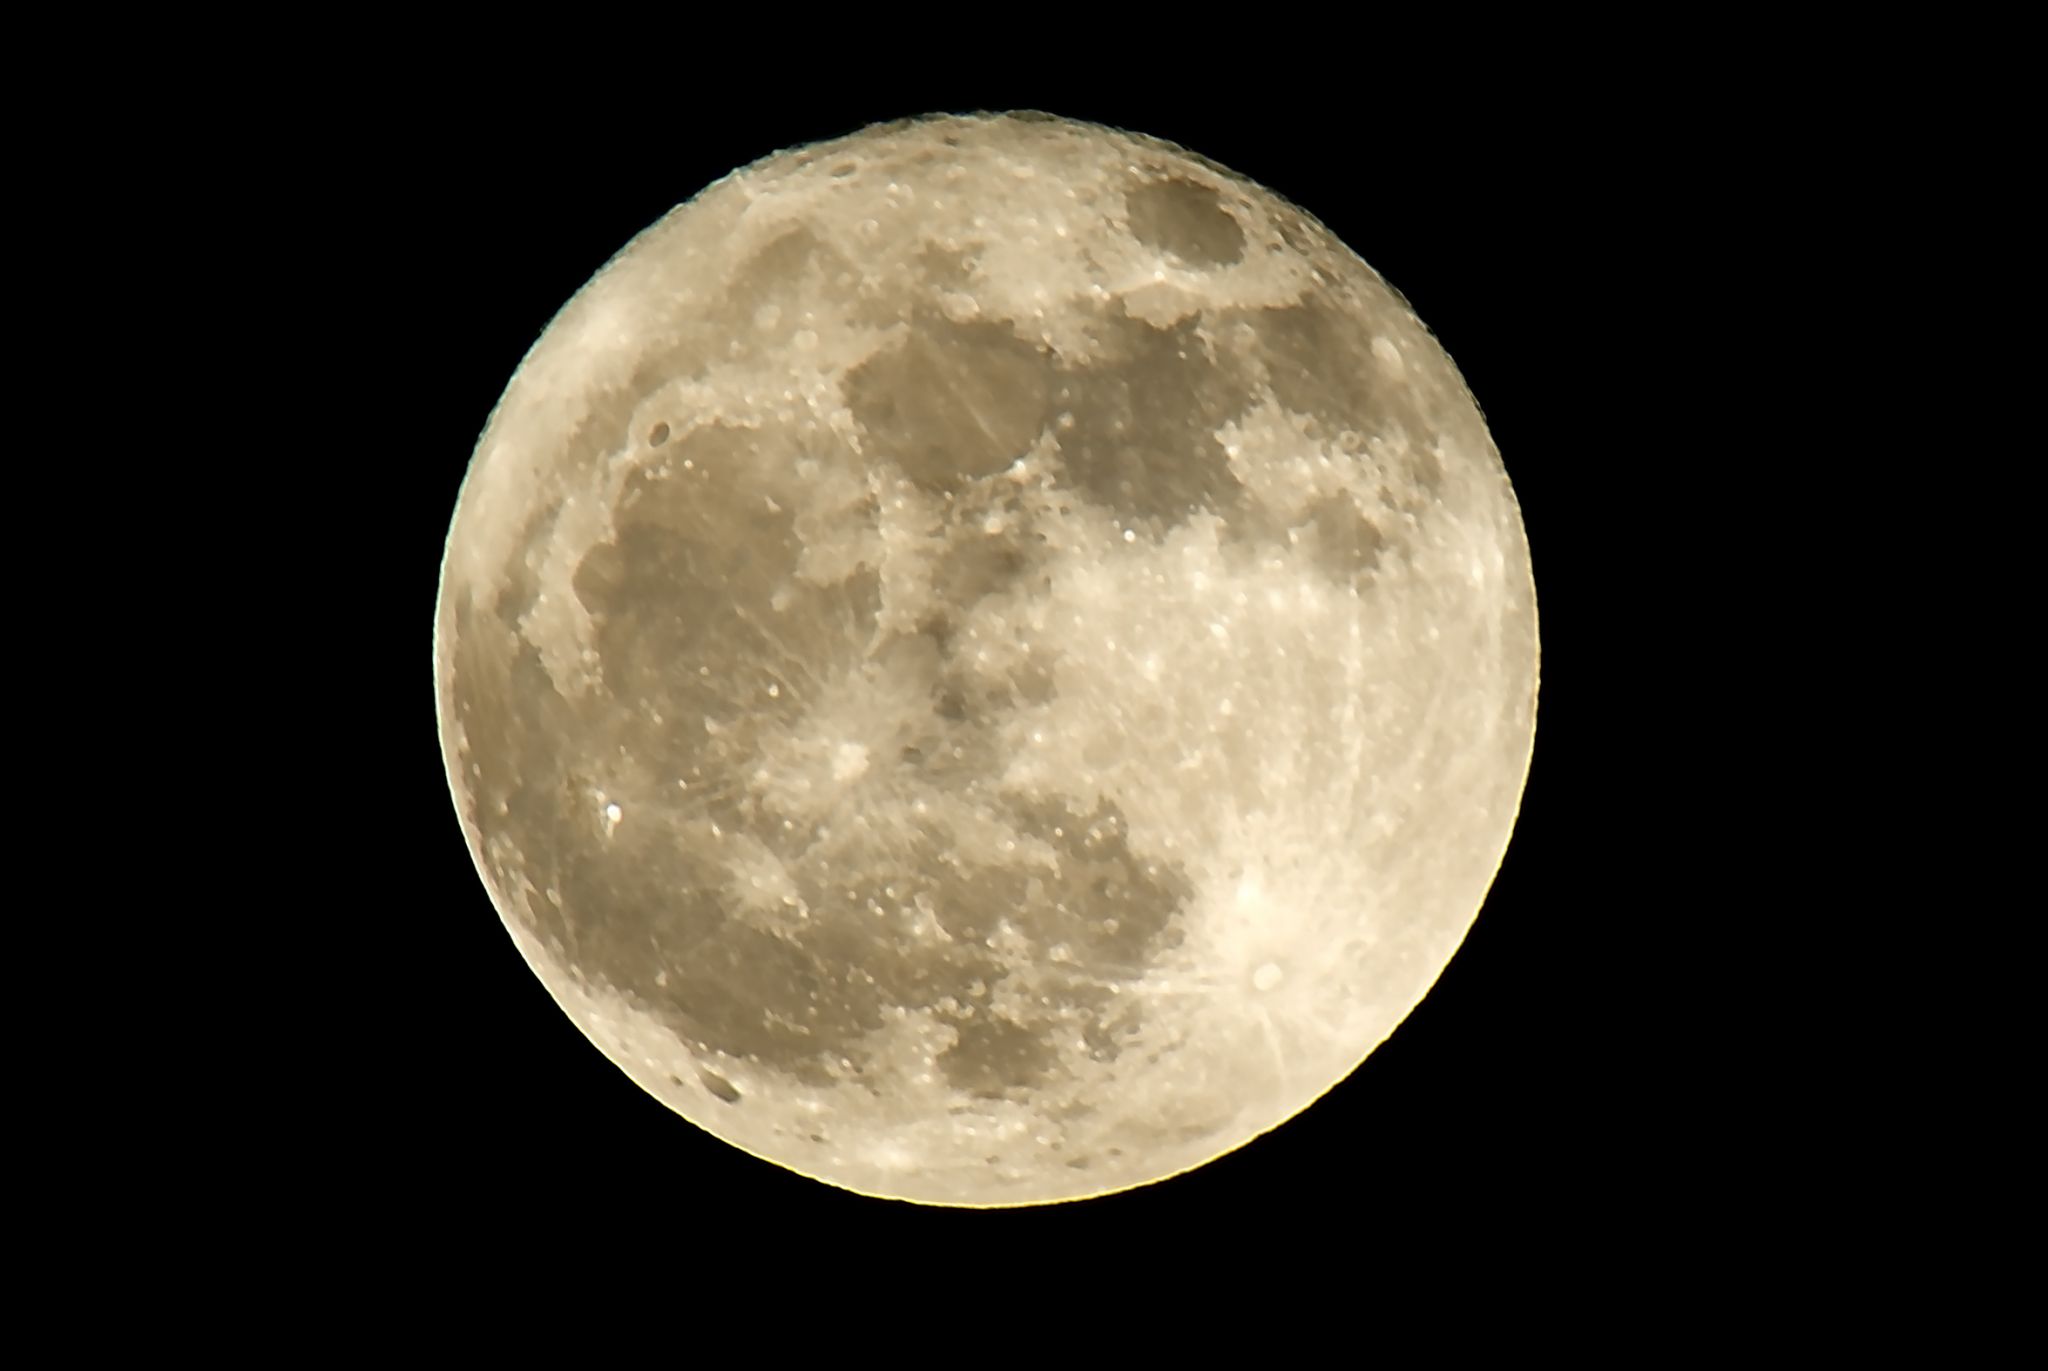 lors de la phase de pleine lune, le satellite naturel de la Terre est visible sous l’aspect d’un disque entier